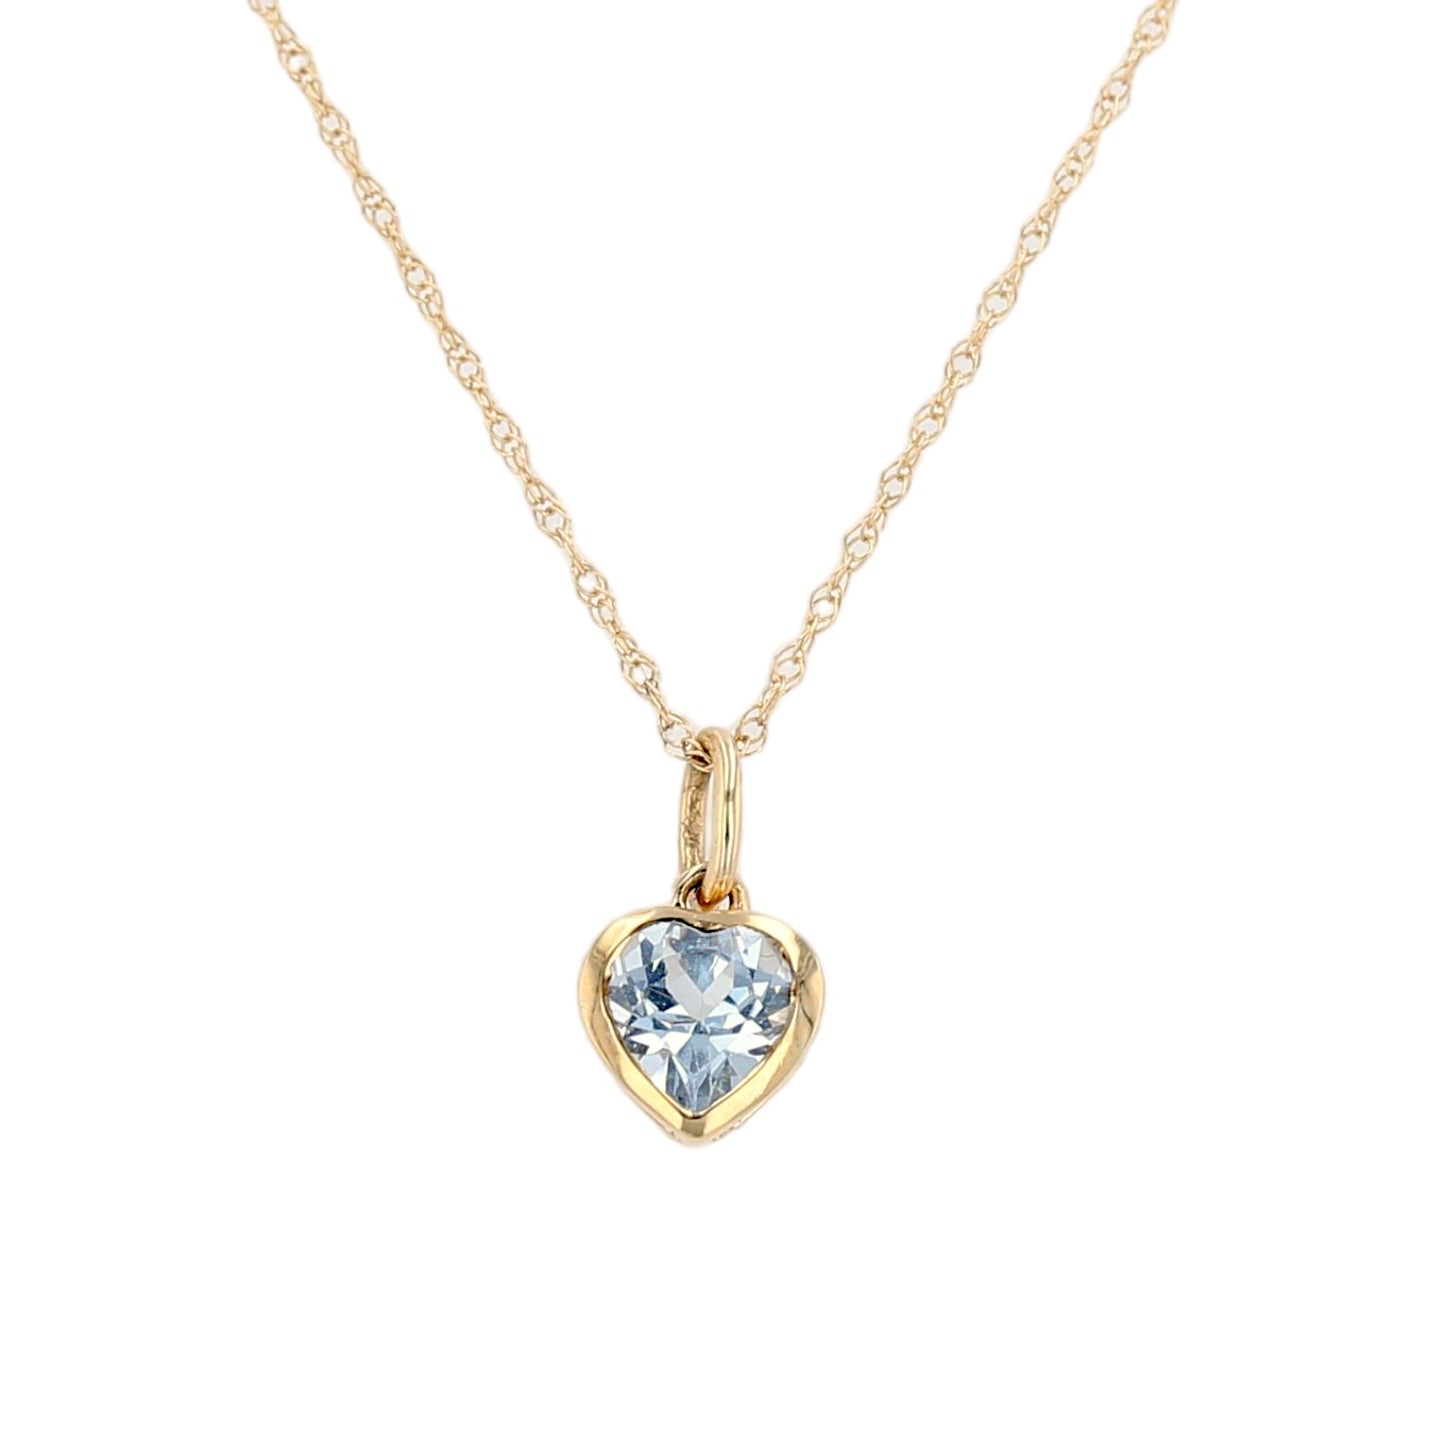 Aquamarine cupids heart pendant necklace-15351